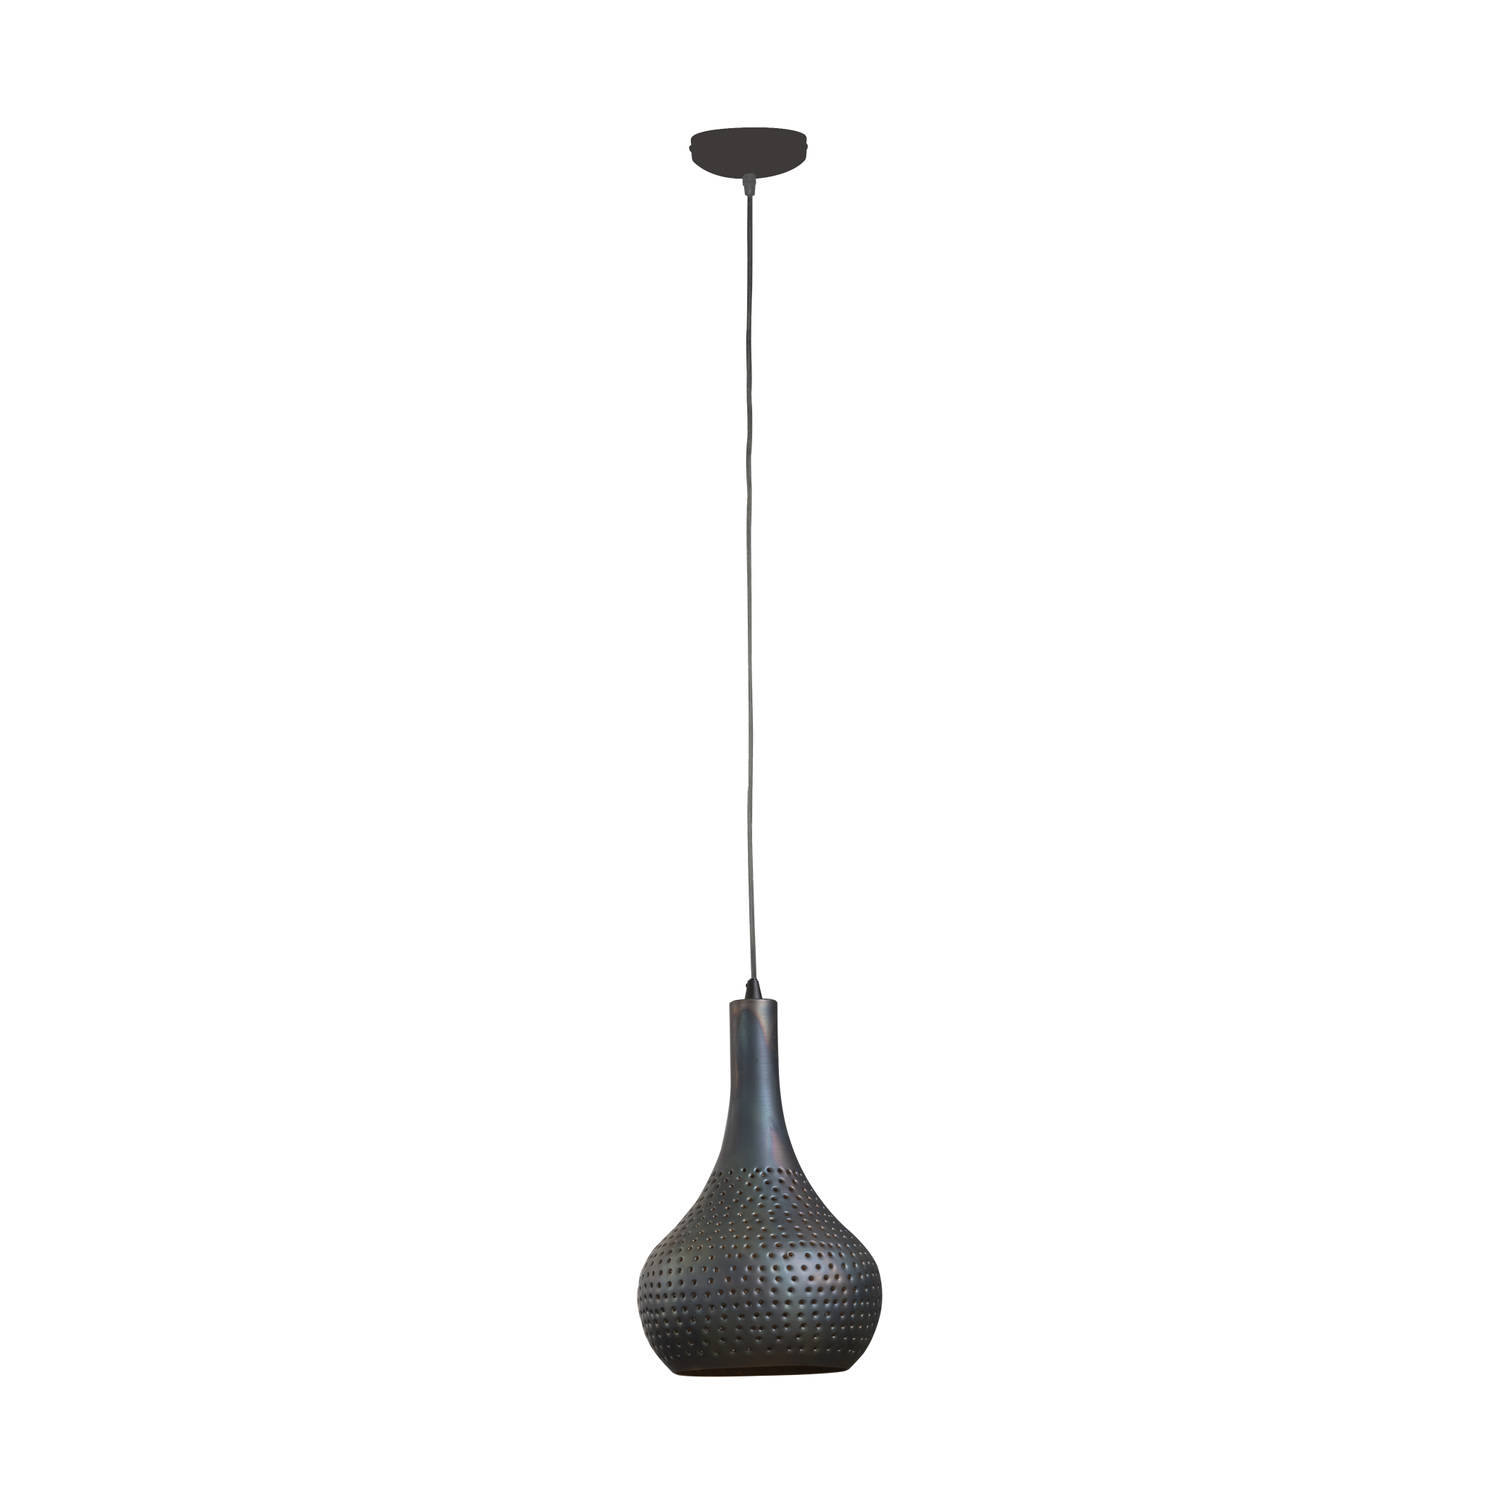 Giga Meubel Gm Hanglamp 1-lichts - Kegel - Zwart/bruin - Metaal